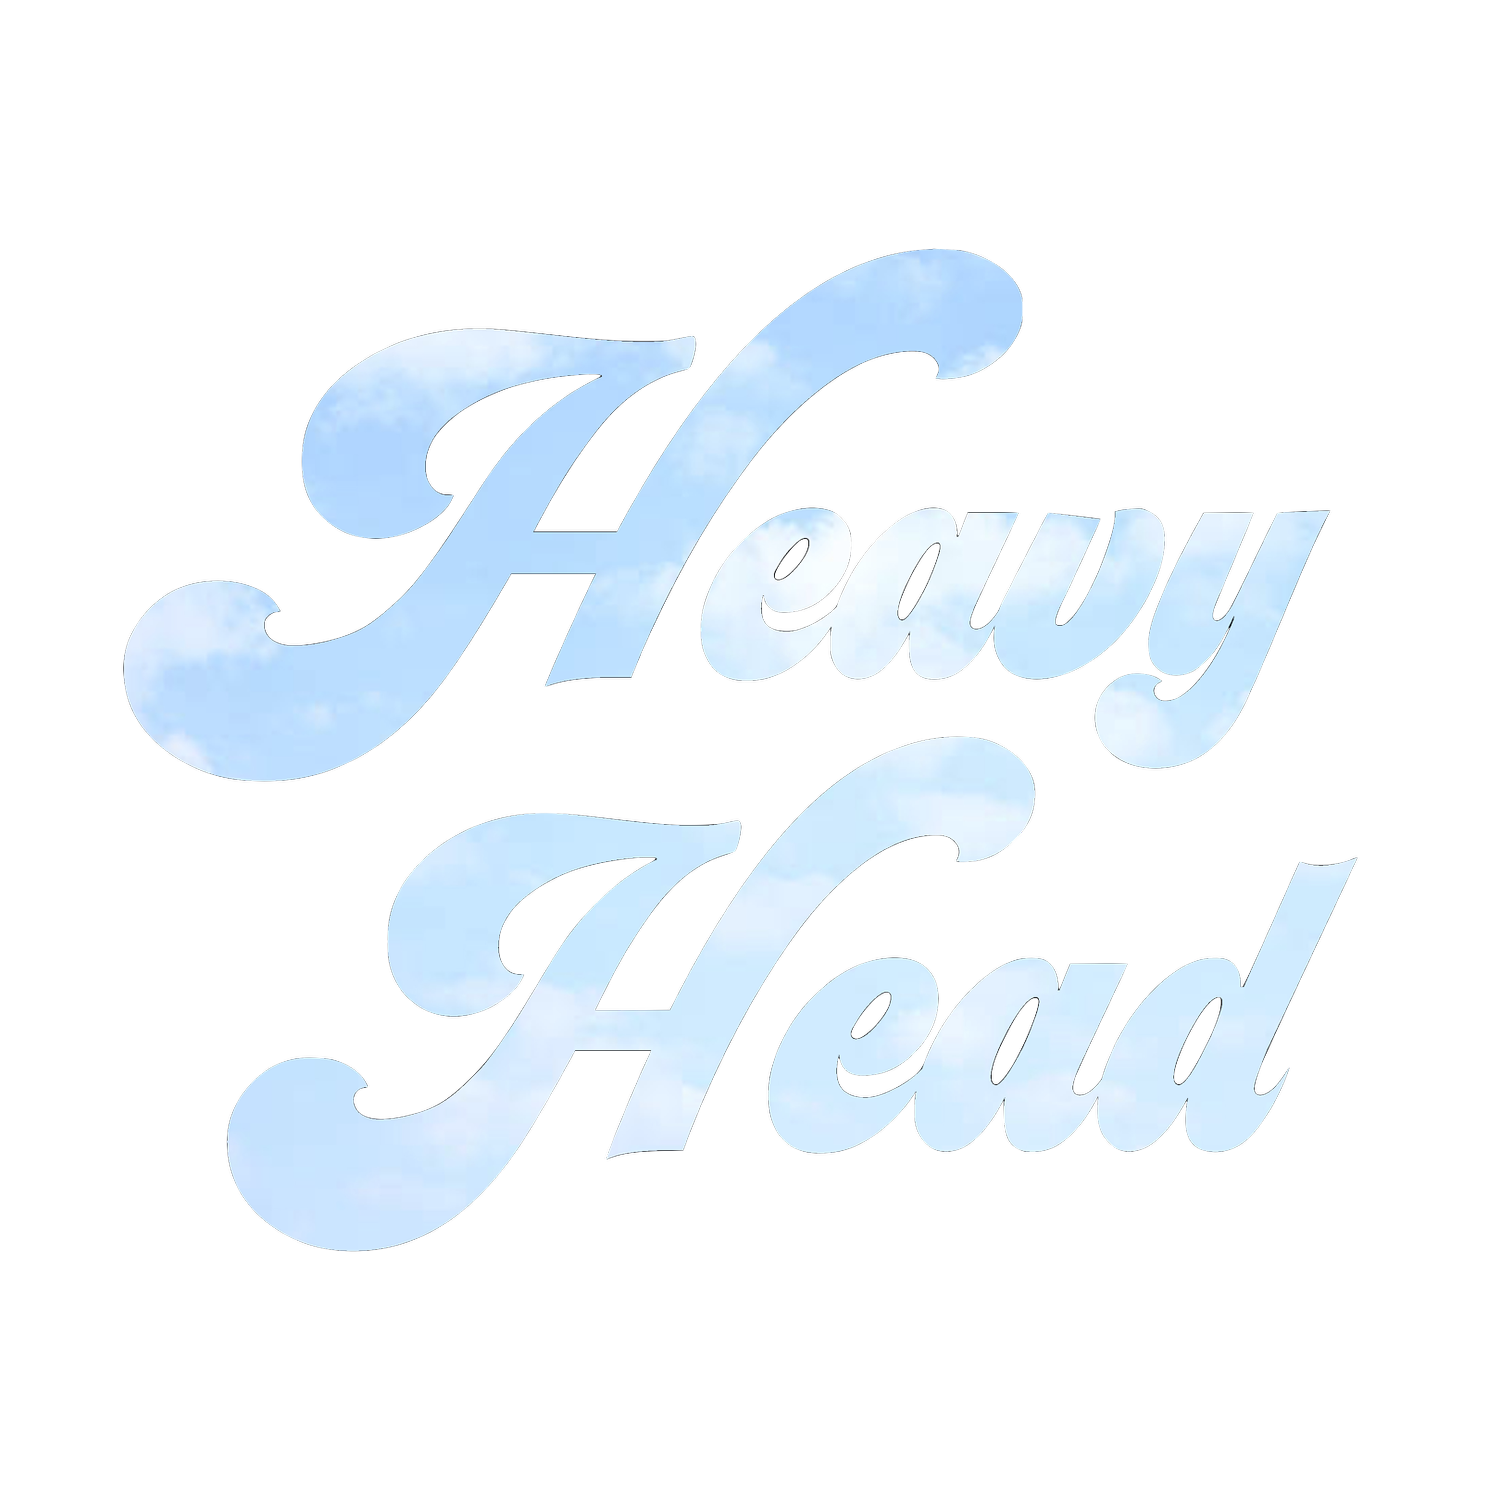 Heavy Head